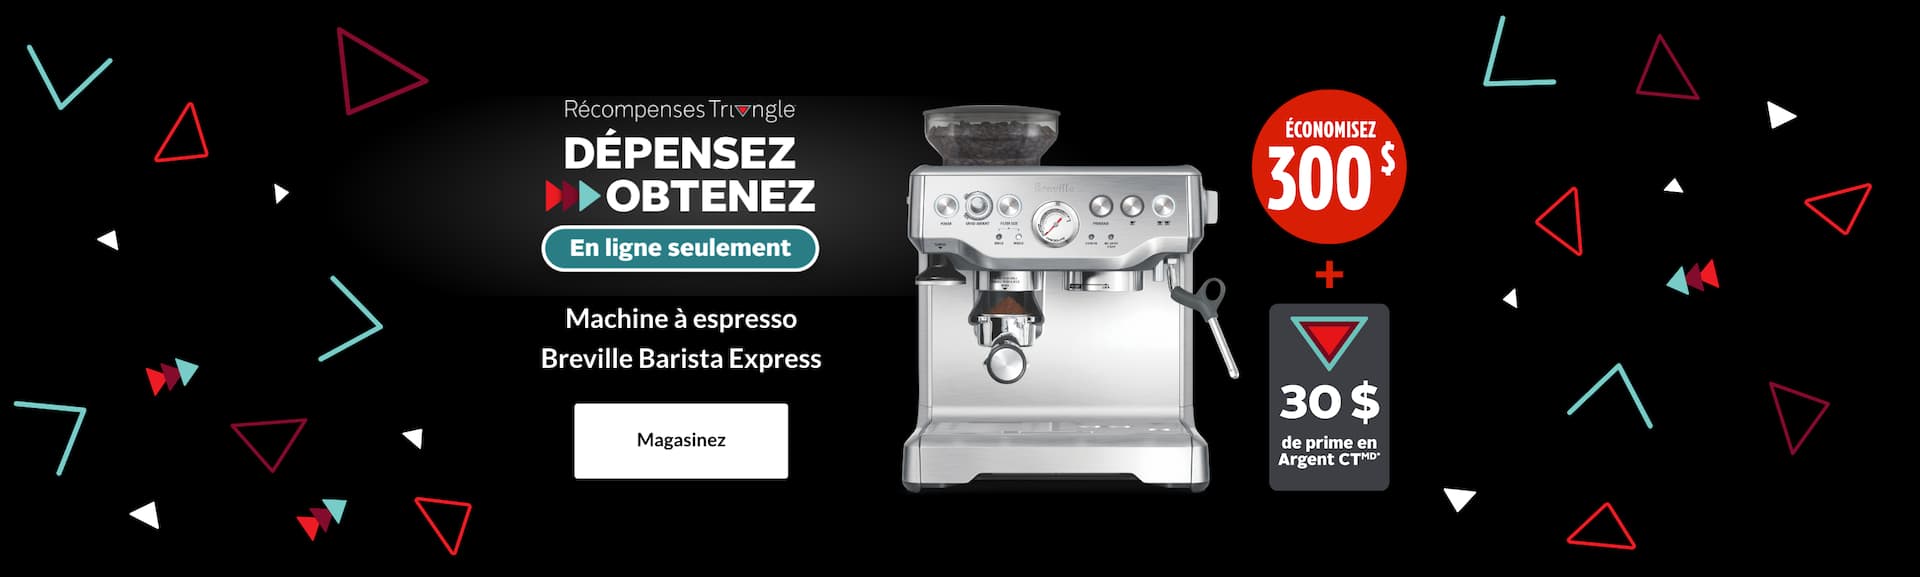 Machine à espresso Breville Barista Express  ÉCONOMISEZ 300 $ + GAGNEZ une prime de 30 $ en Argent CT